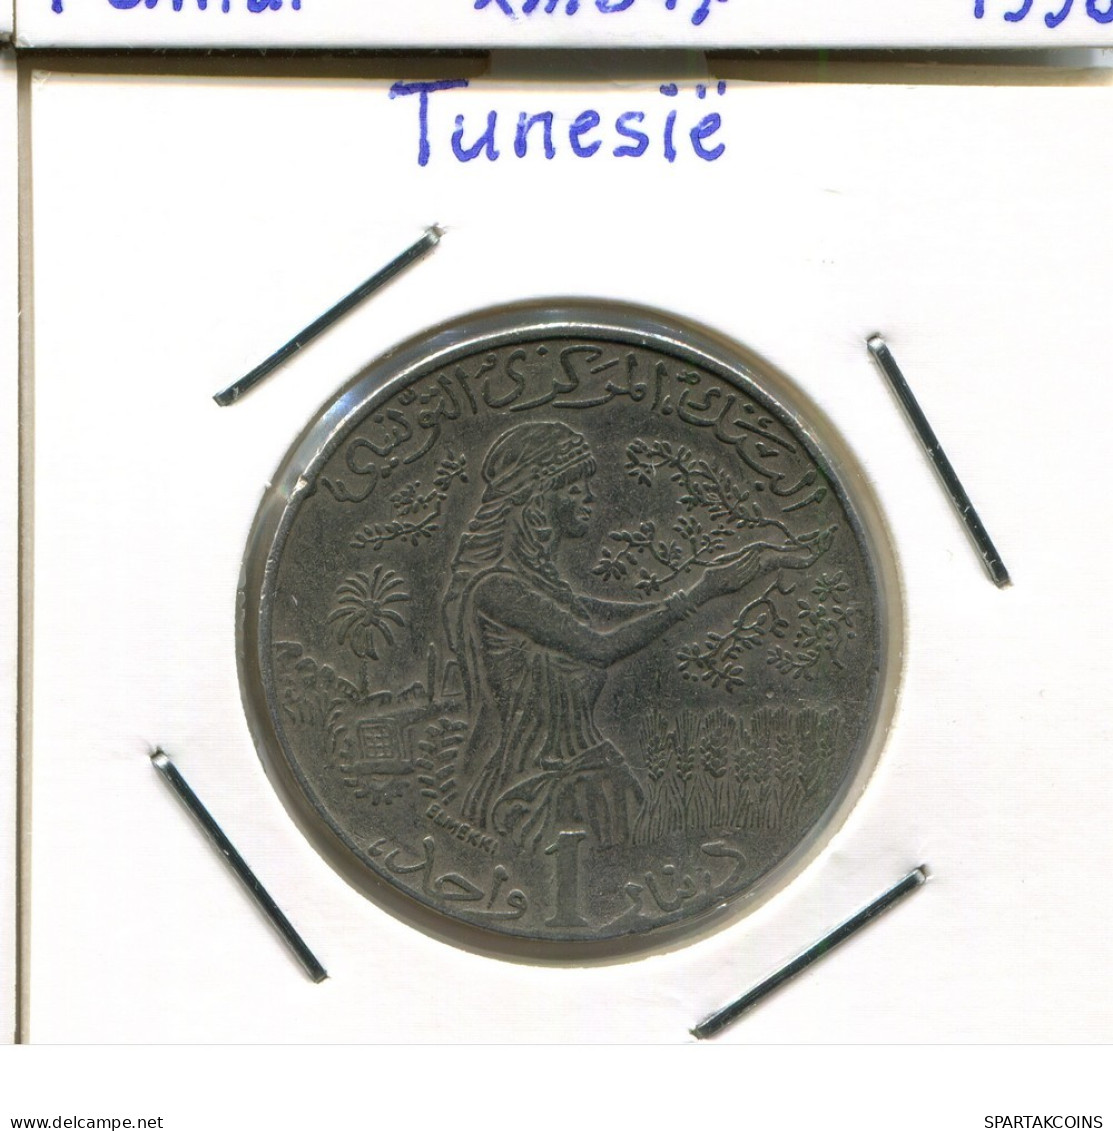 1 DINAR 1997 TÚNEZ TUNISIA Moneda #AP847.2.E.A - Túnez